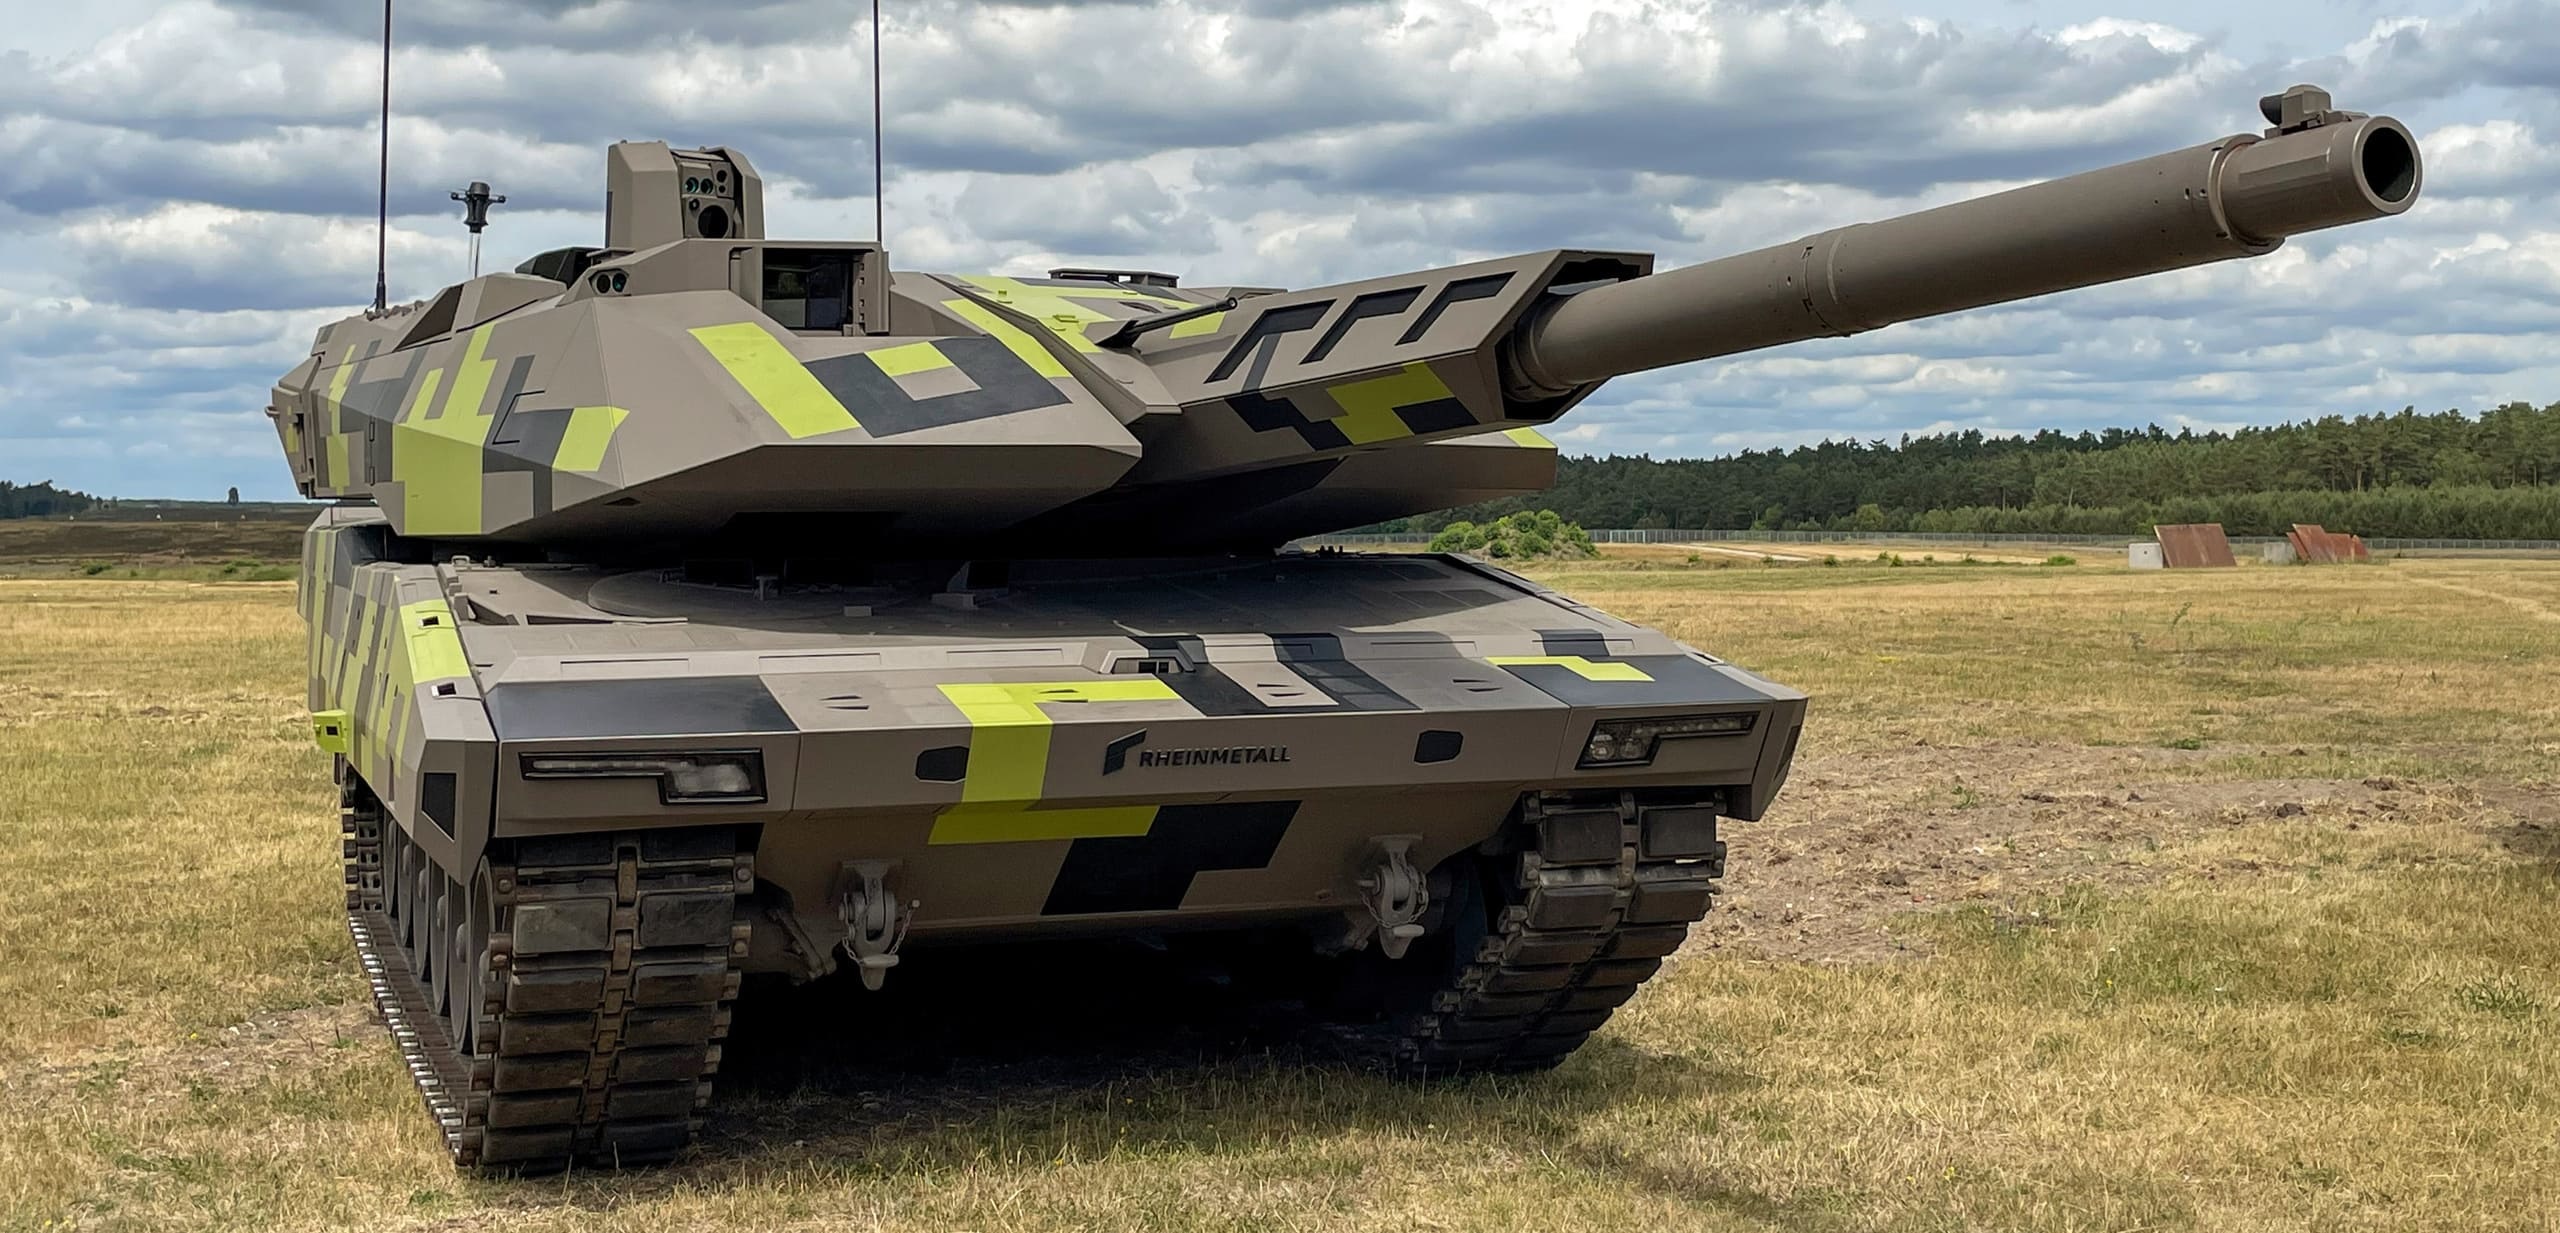 Купить новый немецкий. Panther kf51. Танка Panther kf51. Немецкий танк kf51 Panther. /Rheinmetall_kf51.